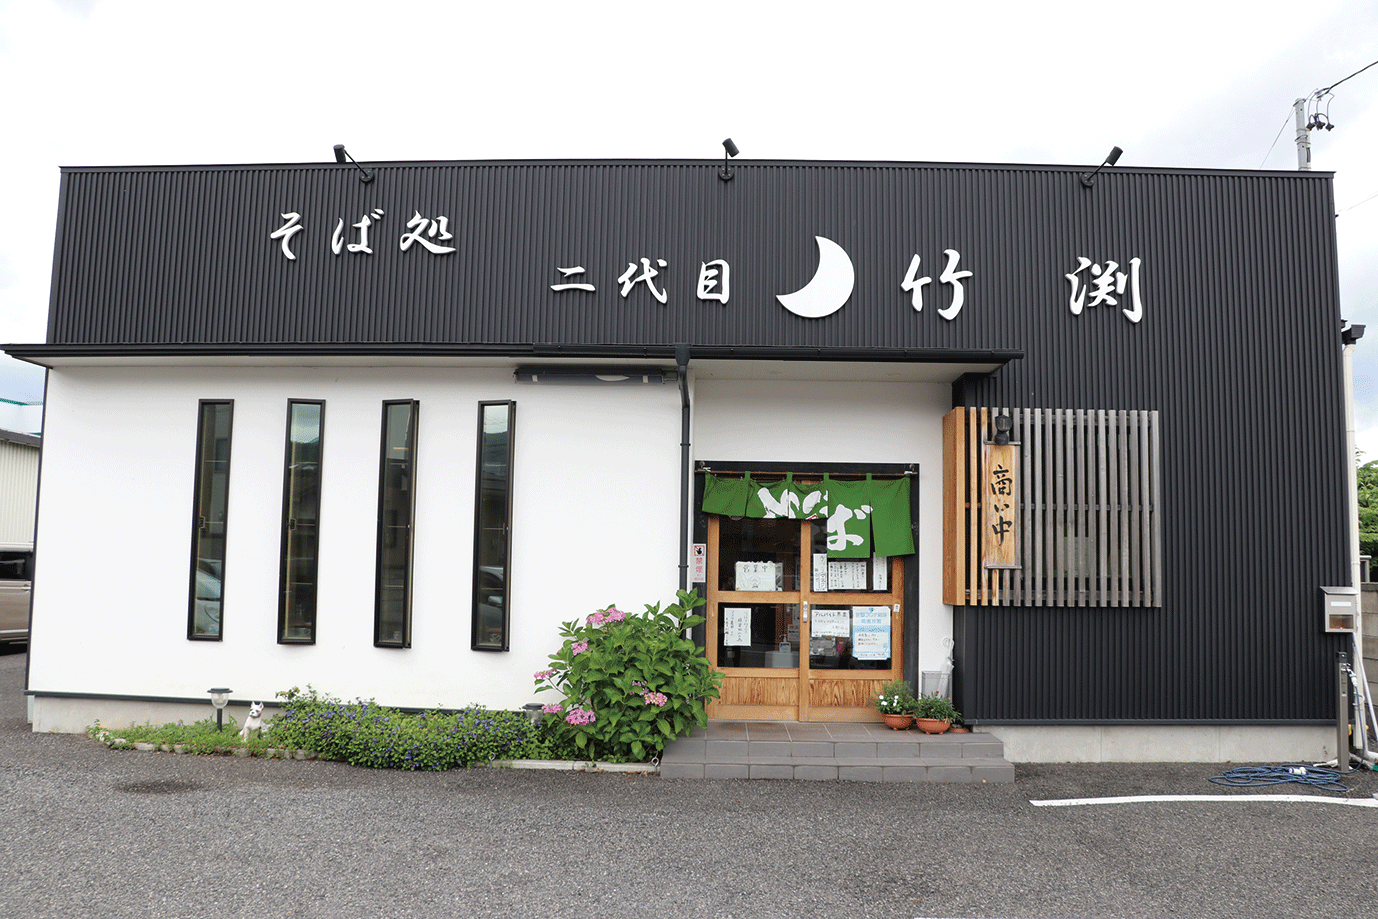 黒と白の外観が印象的な同店。店舗前の駐車場ではこの夏も、波田の「ちょんまげスイカ」を毎週木曜に販売予定です